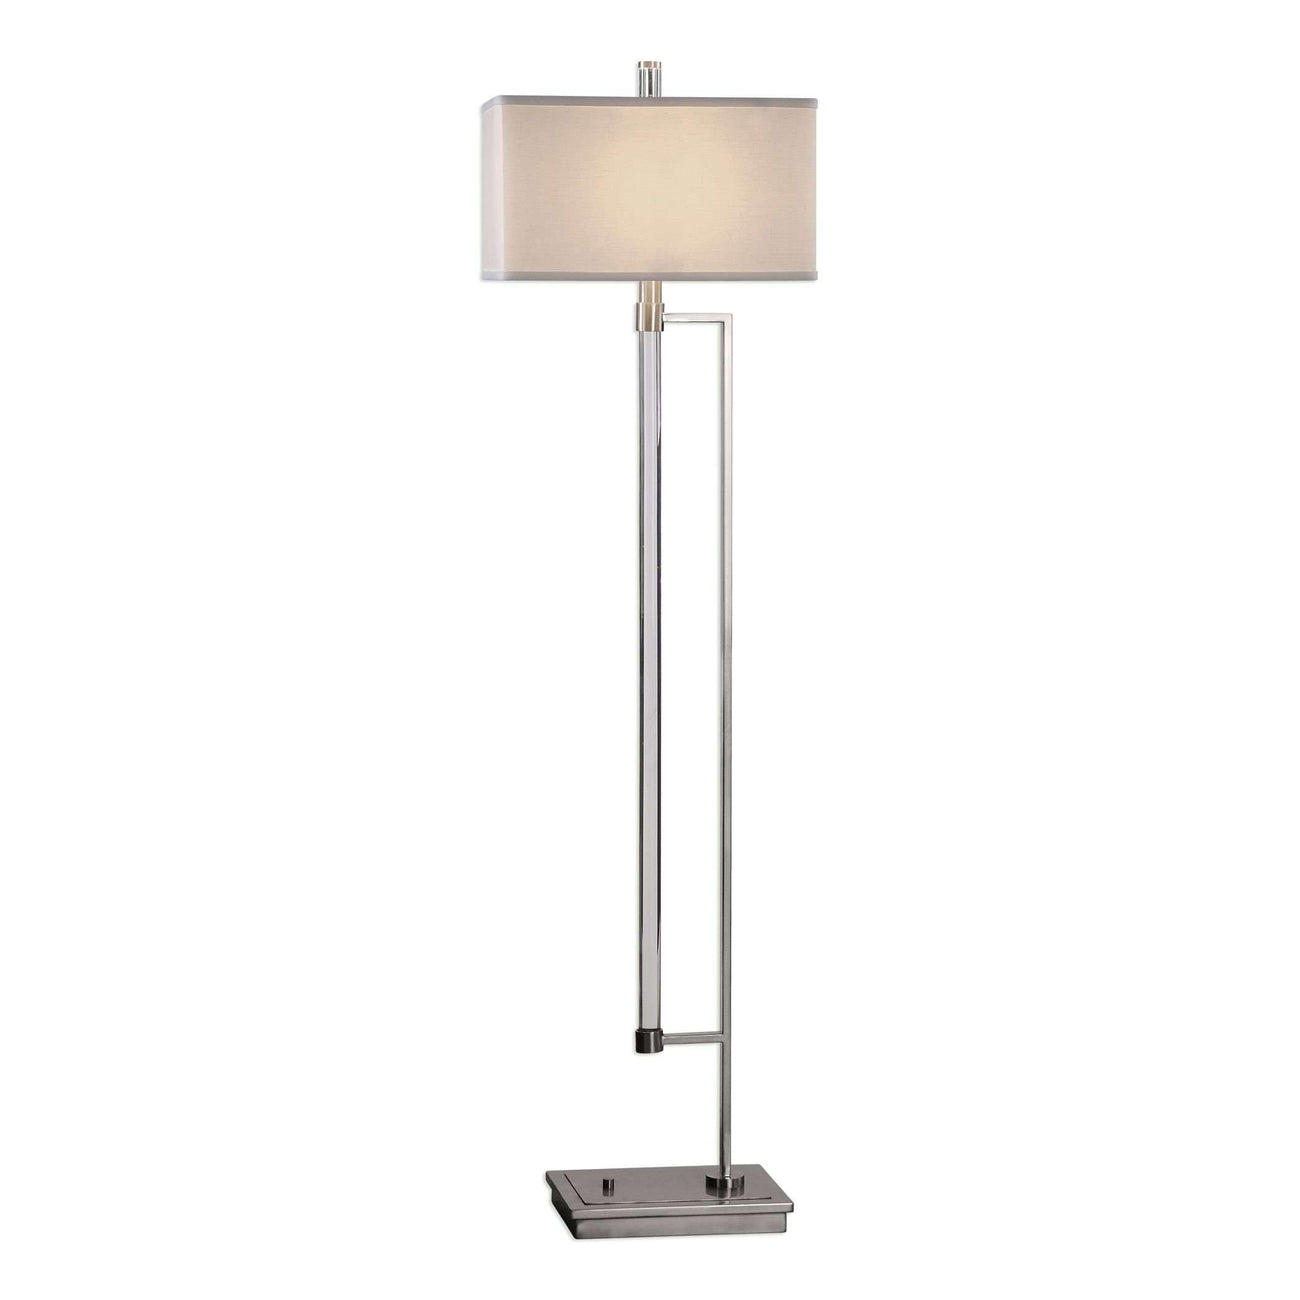 Mannan Modern Floor Lamp-Uttermost-UTTM-28134-Floor Lamps-1-France and Son